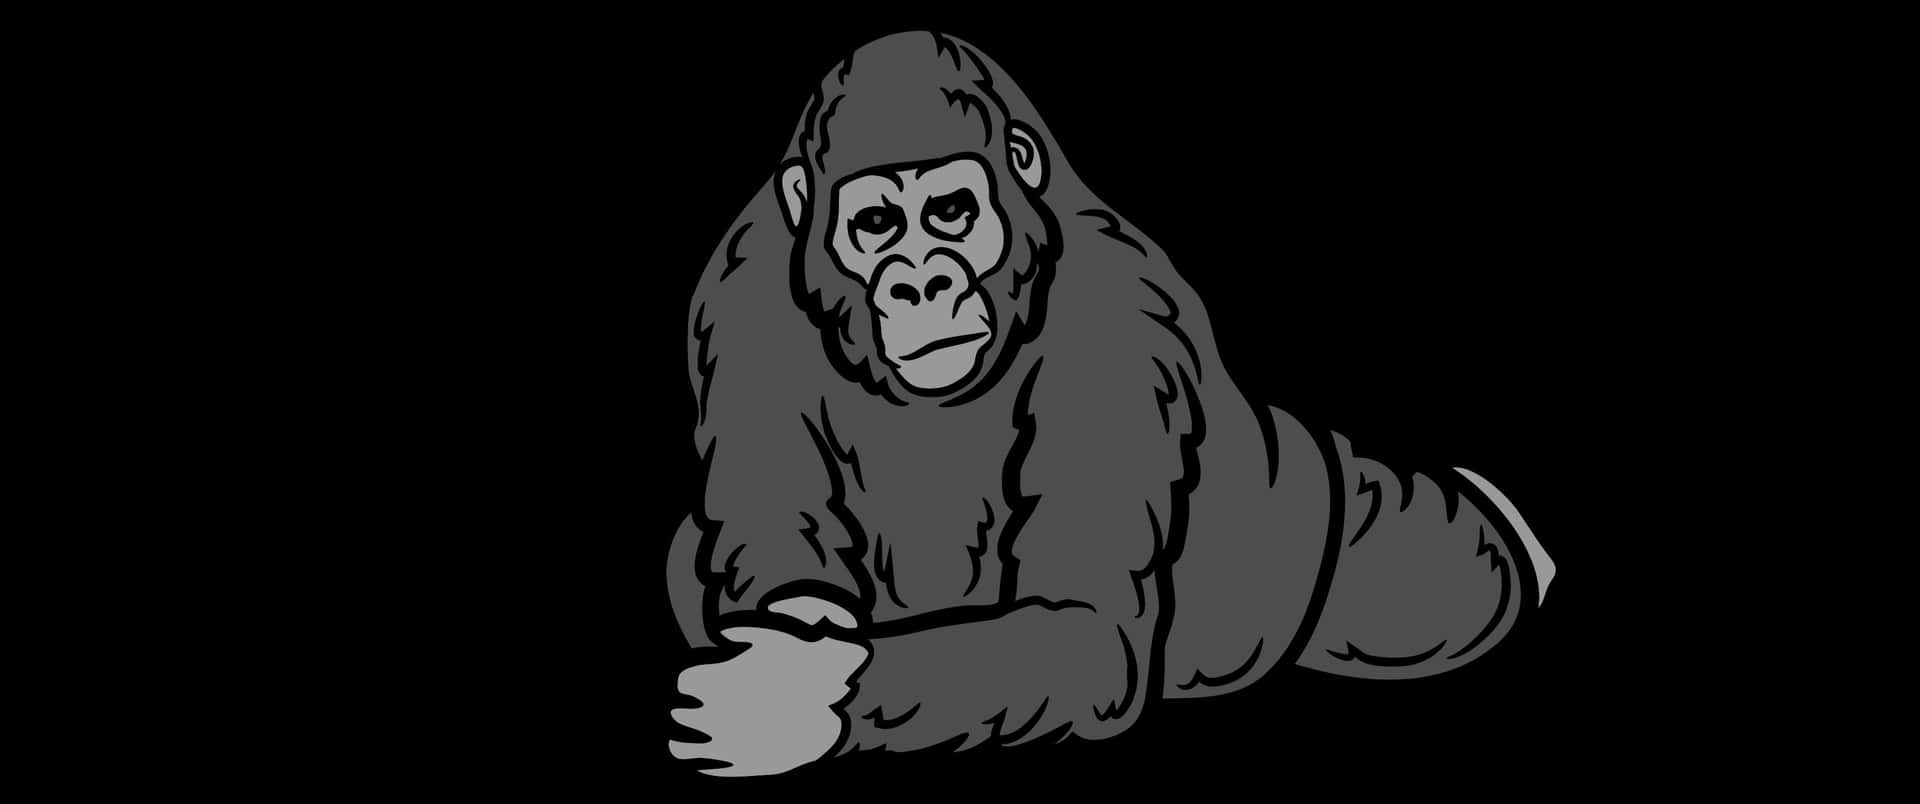 3440x1440psfondo Disegno Animale Di Gorilla